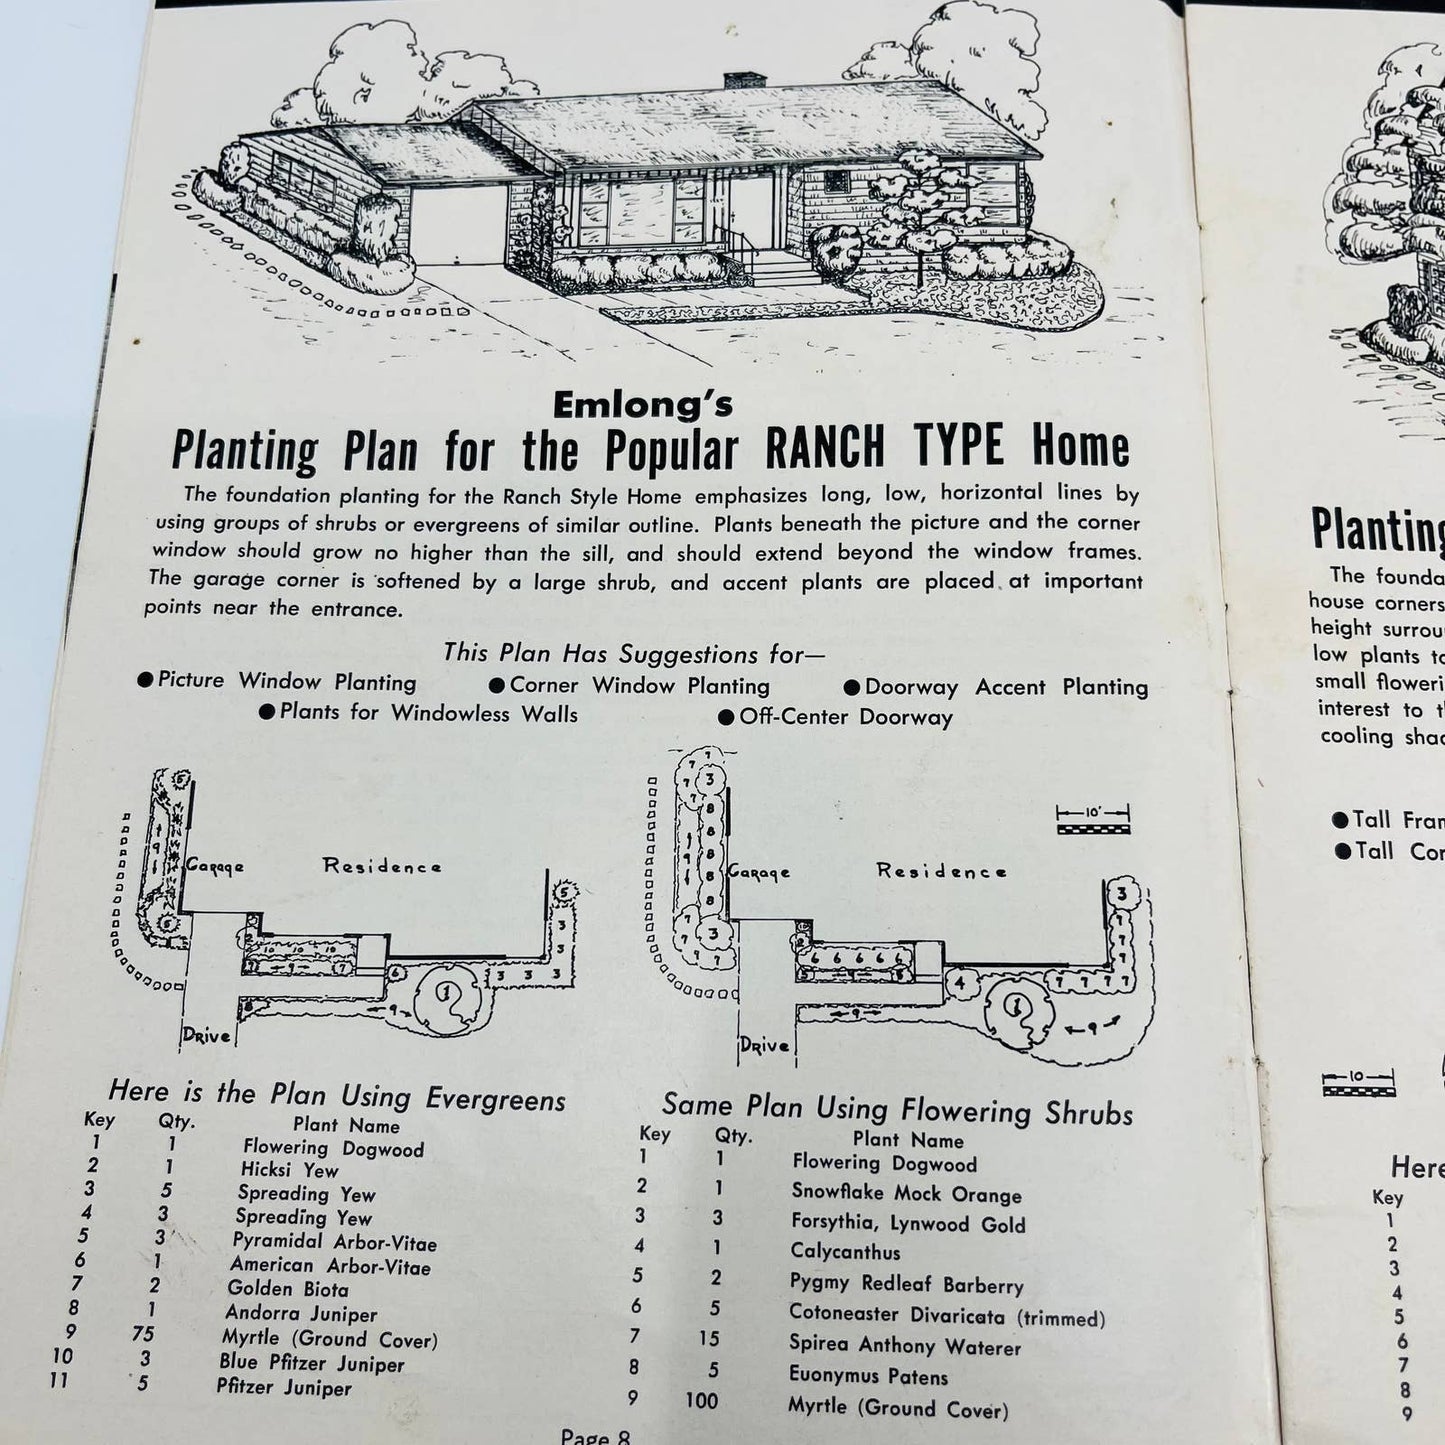 1950s Emlong Nurseries Stevensville MI Guide to Better Gardening Booklet BA4